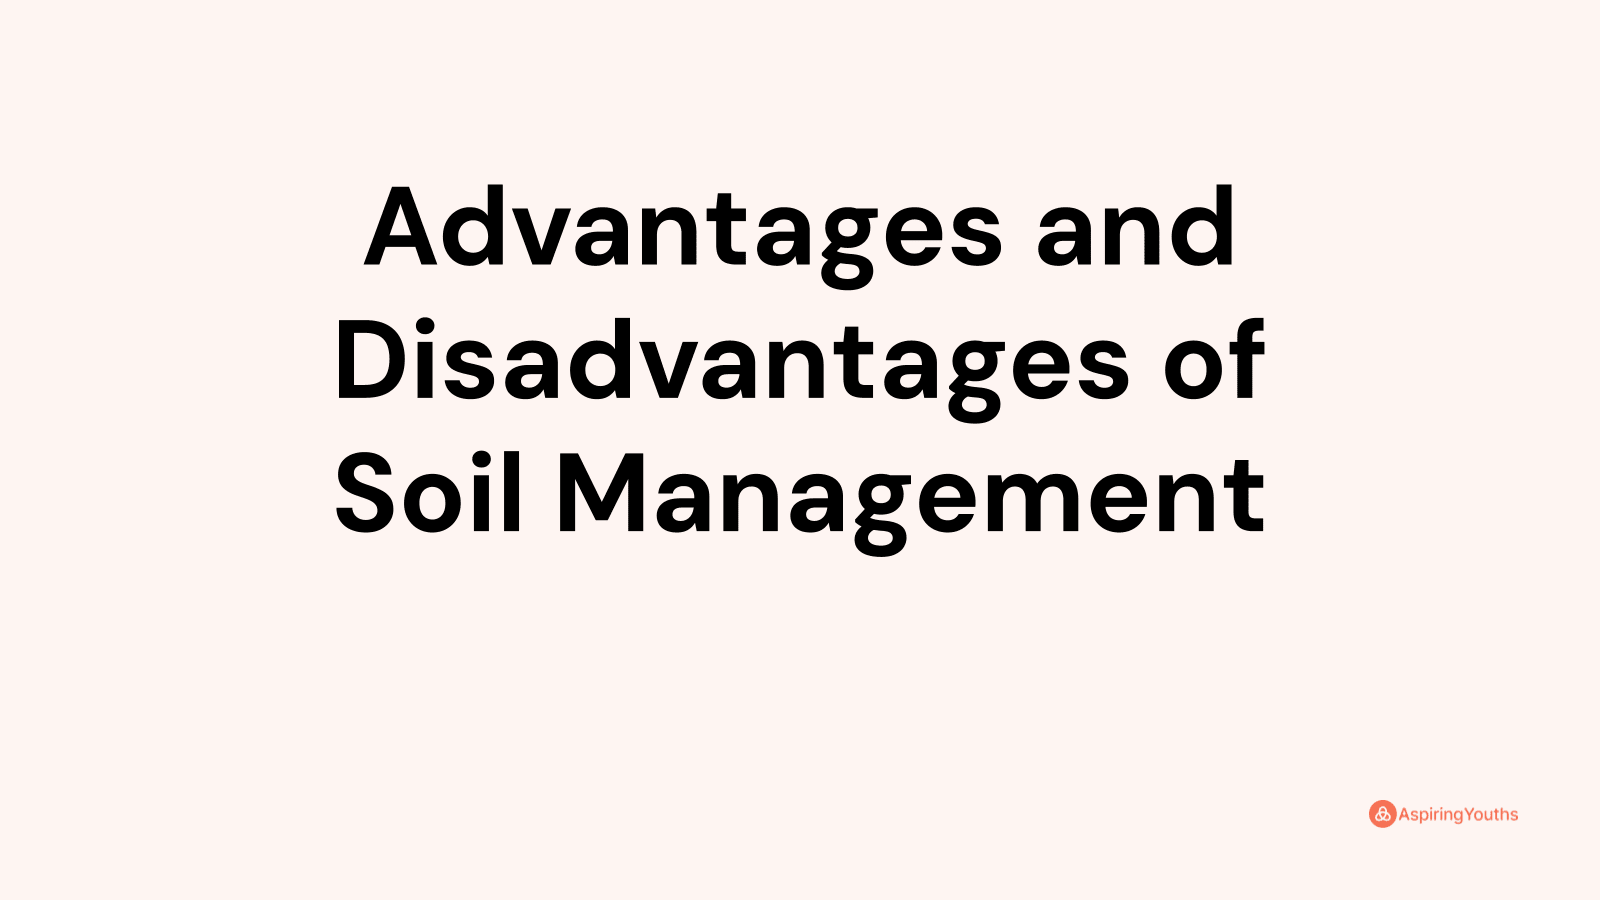 Advantages and disadvantages of Soil Management